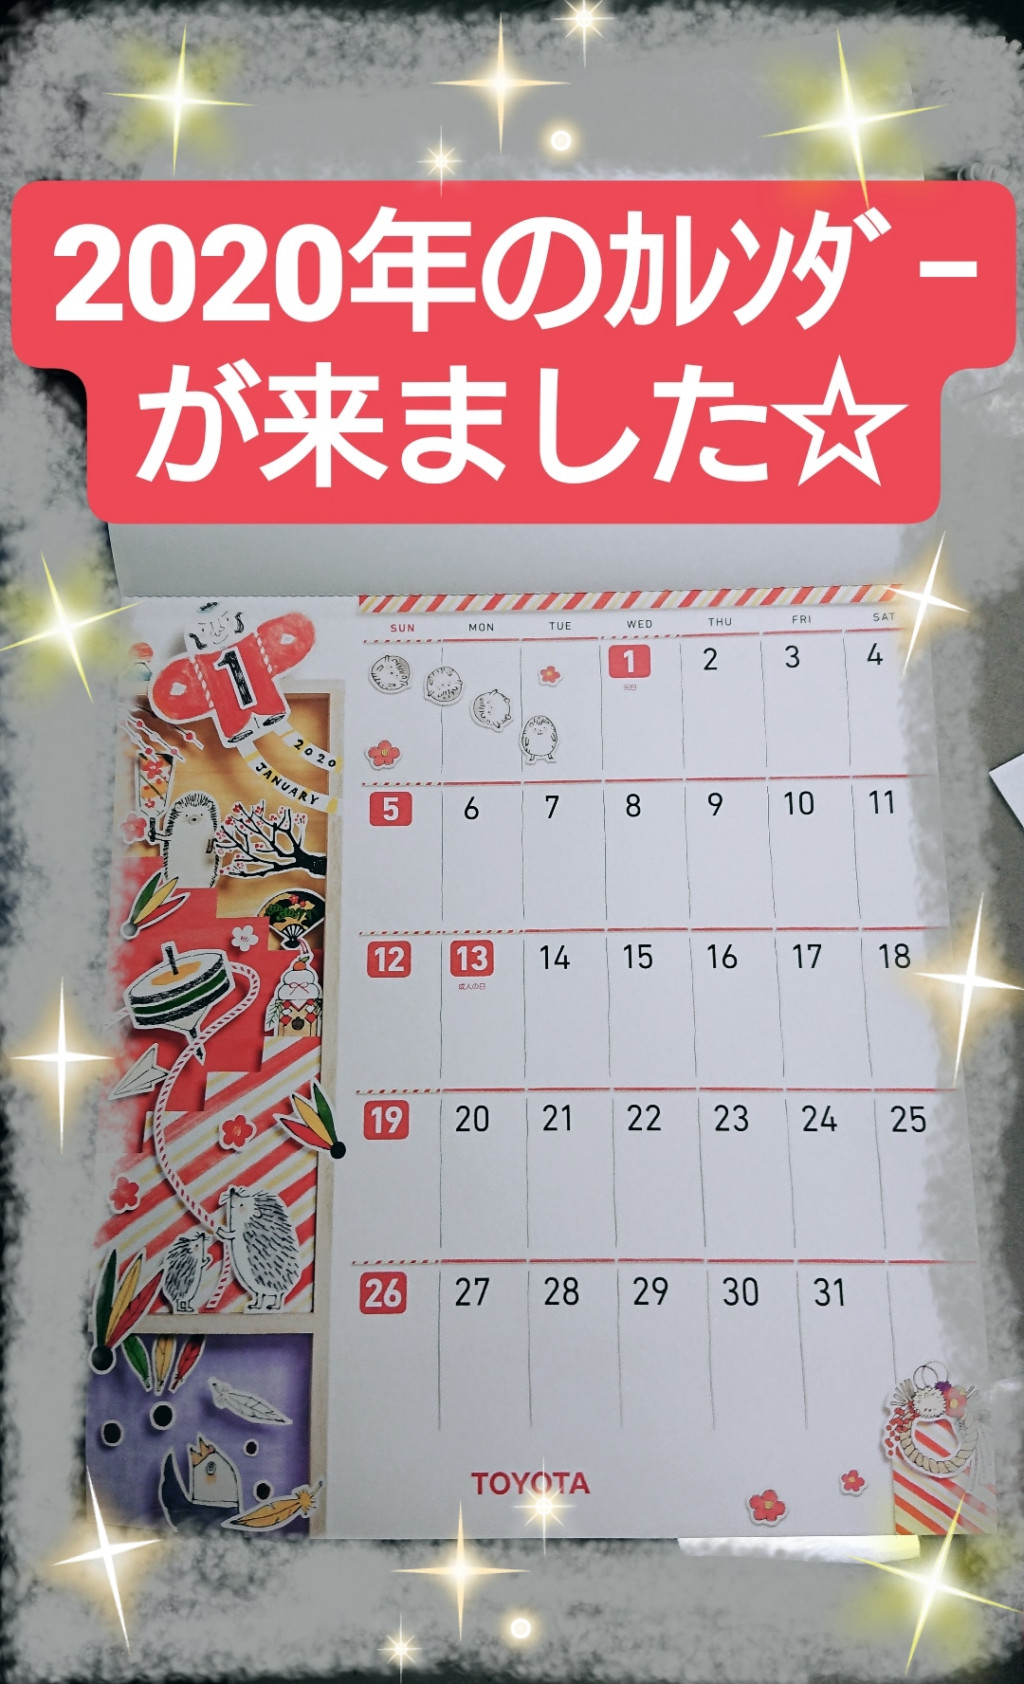 元町店 冬のビッグイベント クリスマスツリーにカレンダーにヤリス ネッツトヨタ石川